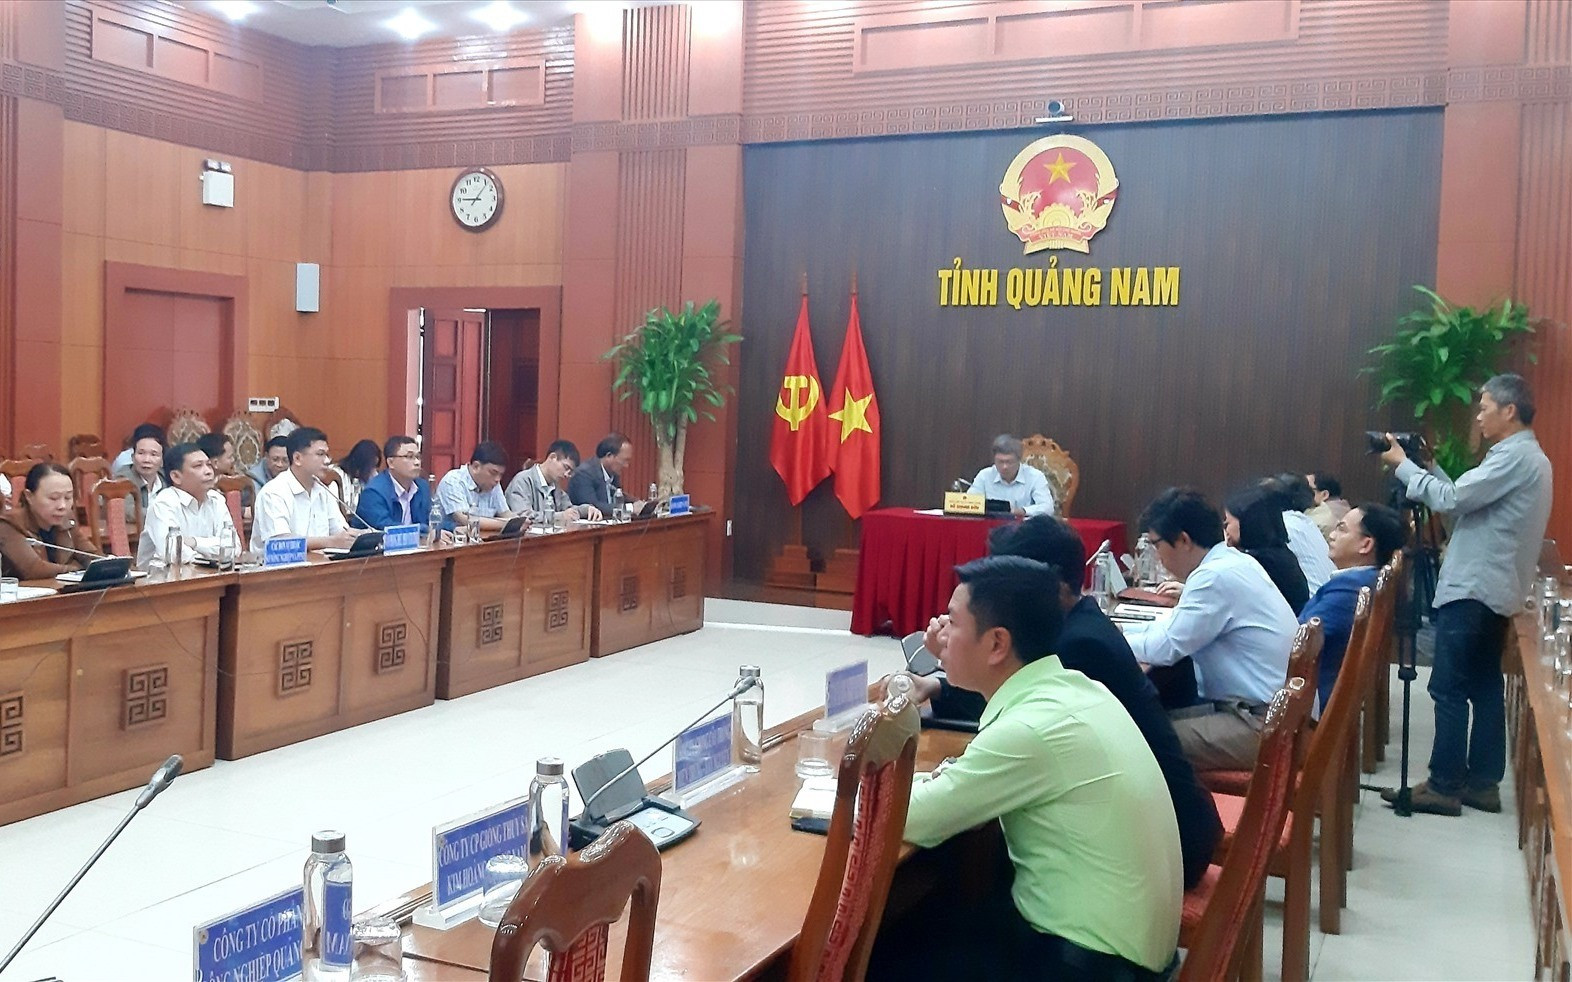 Tham dự tại điểm cầu Quảng Nam có Phó Chủ tịch UBND tỉnh Hồ Quang Bửu và lãnh đạo các sở, ban ngành liên quan. Ảnh: M.N